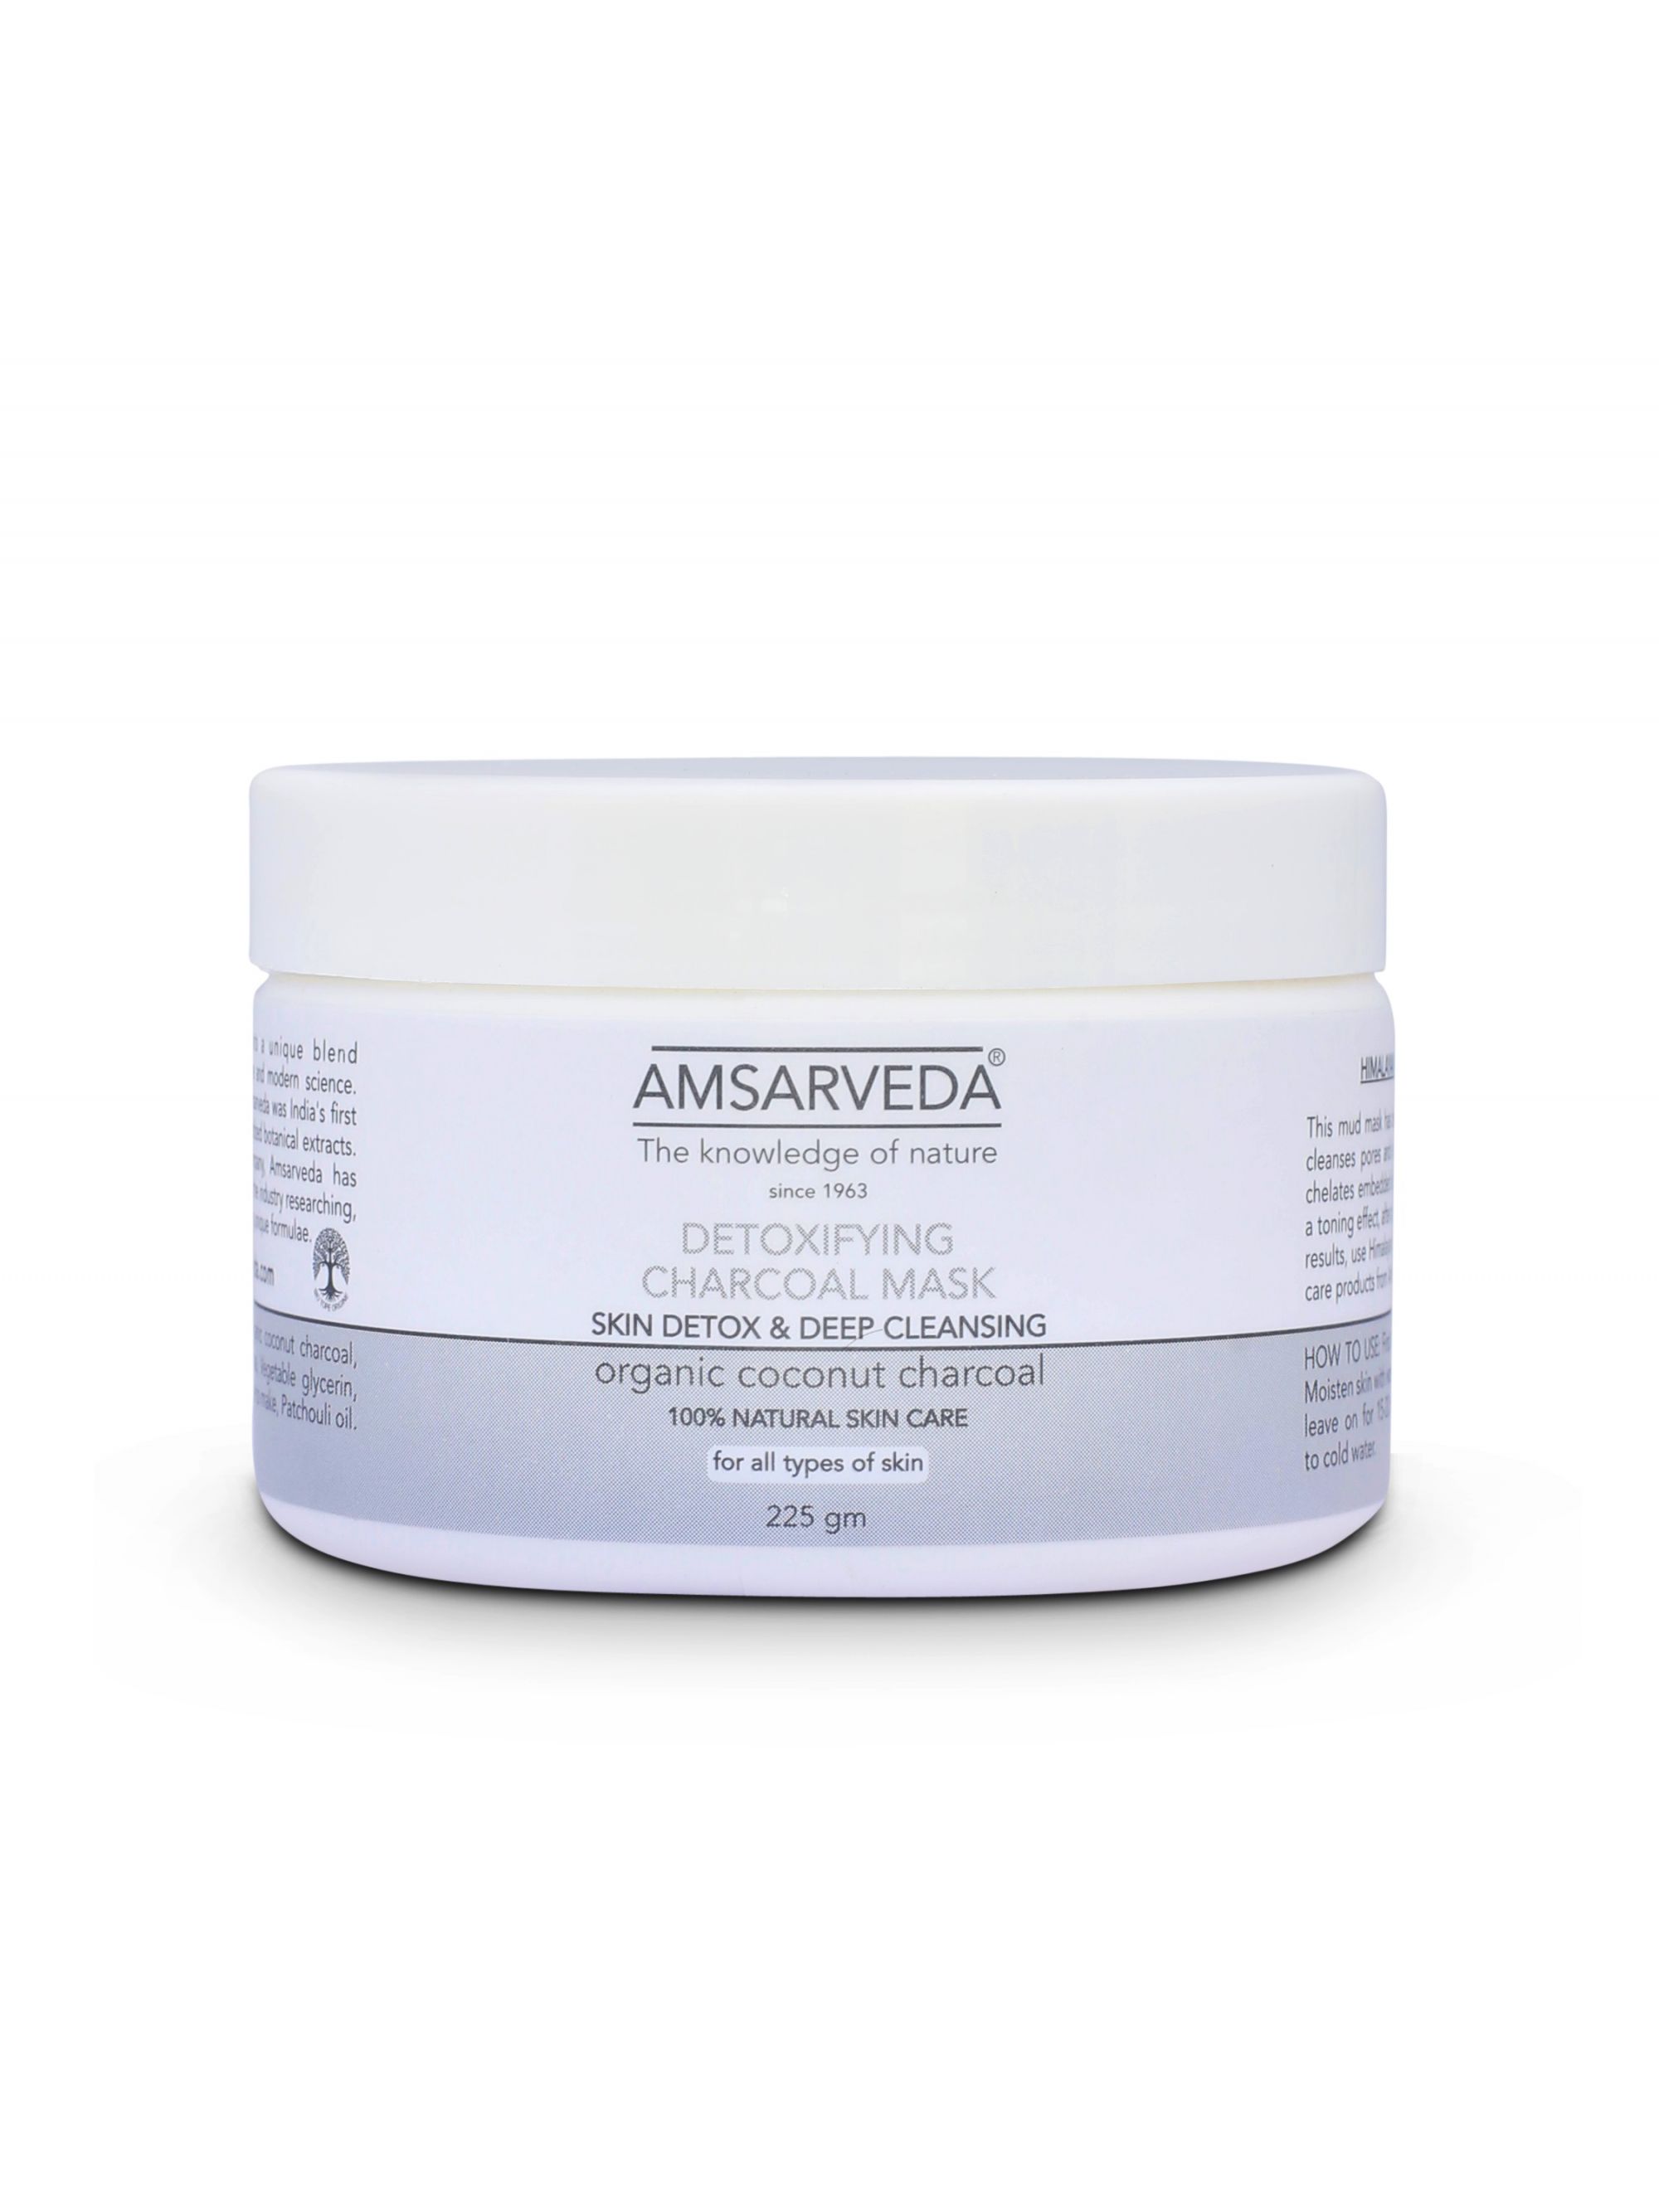 Купить Антиоксидантная маска AMSARVEDA для глубокого очищения кожи с кокосовым углем, 225 гр, Detoxifying Charcoal Mask